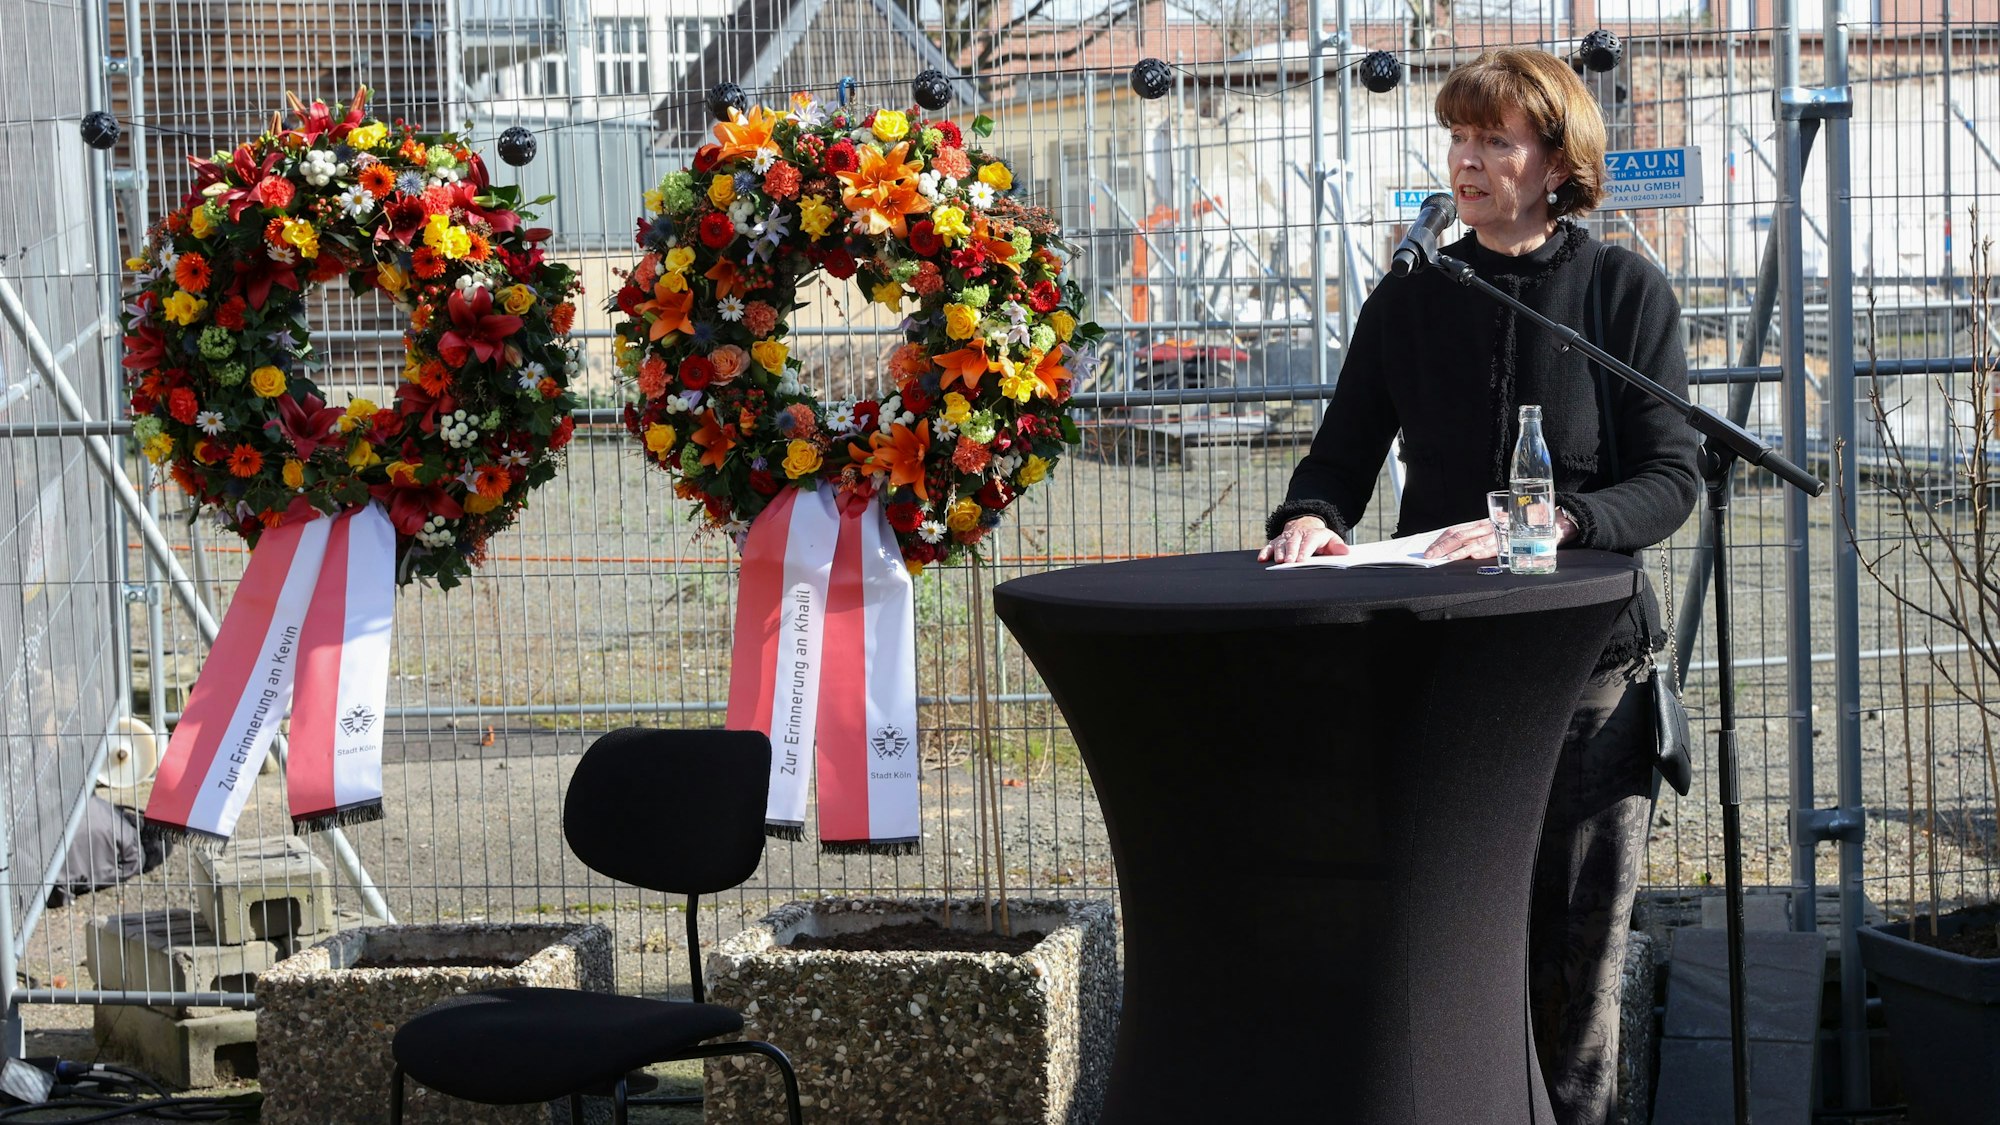 Oberbürgermeisterin Henriette Reker steht an einem Tisch und spricht in ein Mikrofon. Hinter ihr ist ein Bauzaun, an dem zwei Blumenkränze befestigt sind.